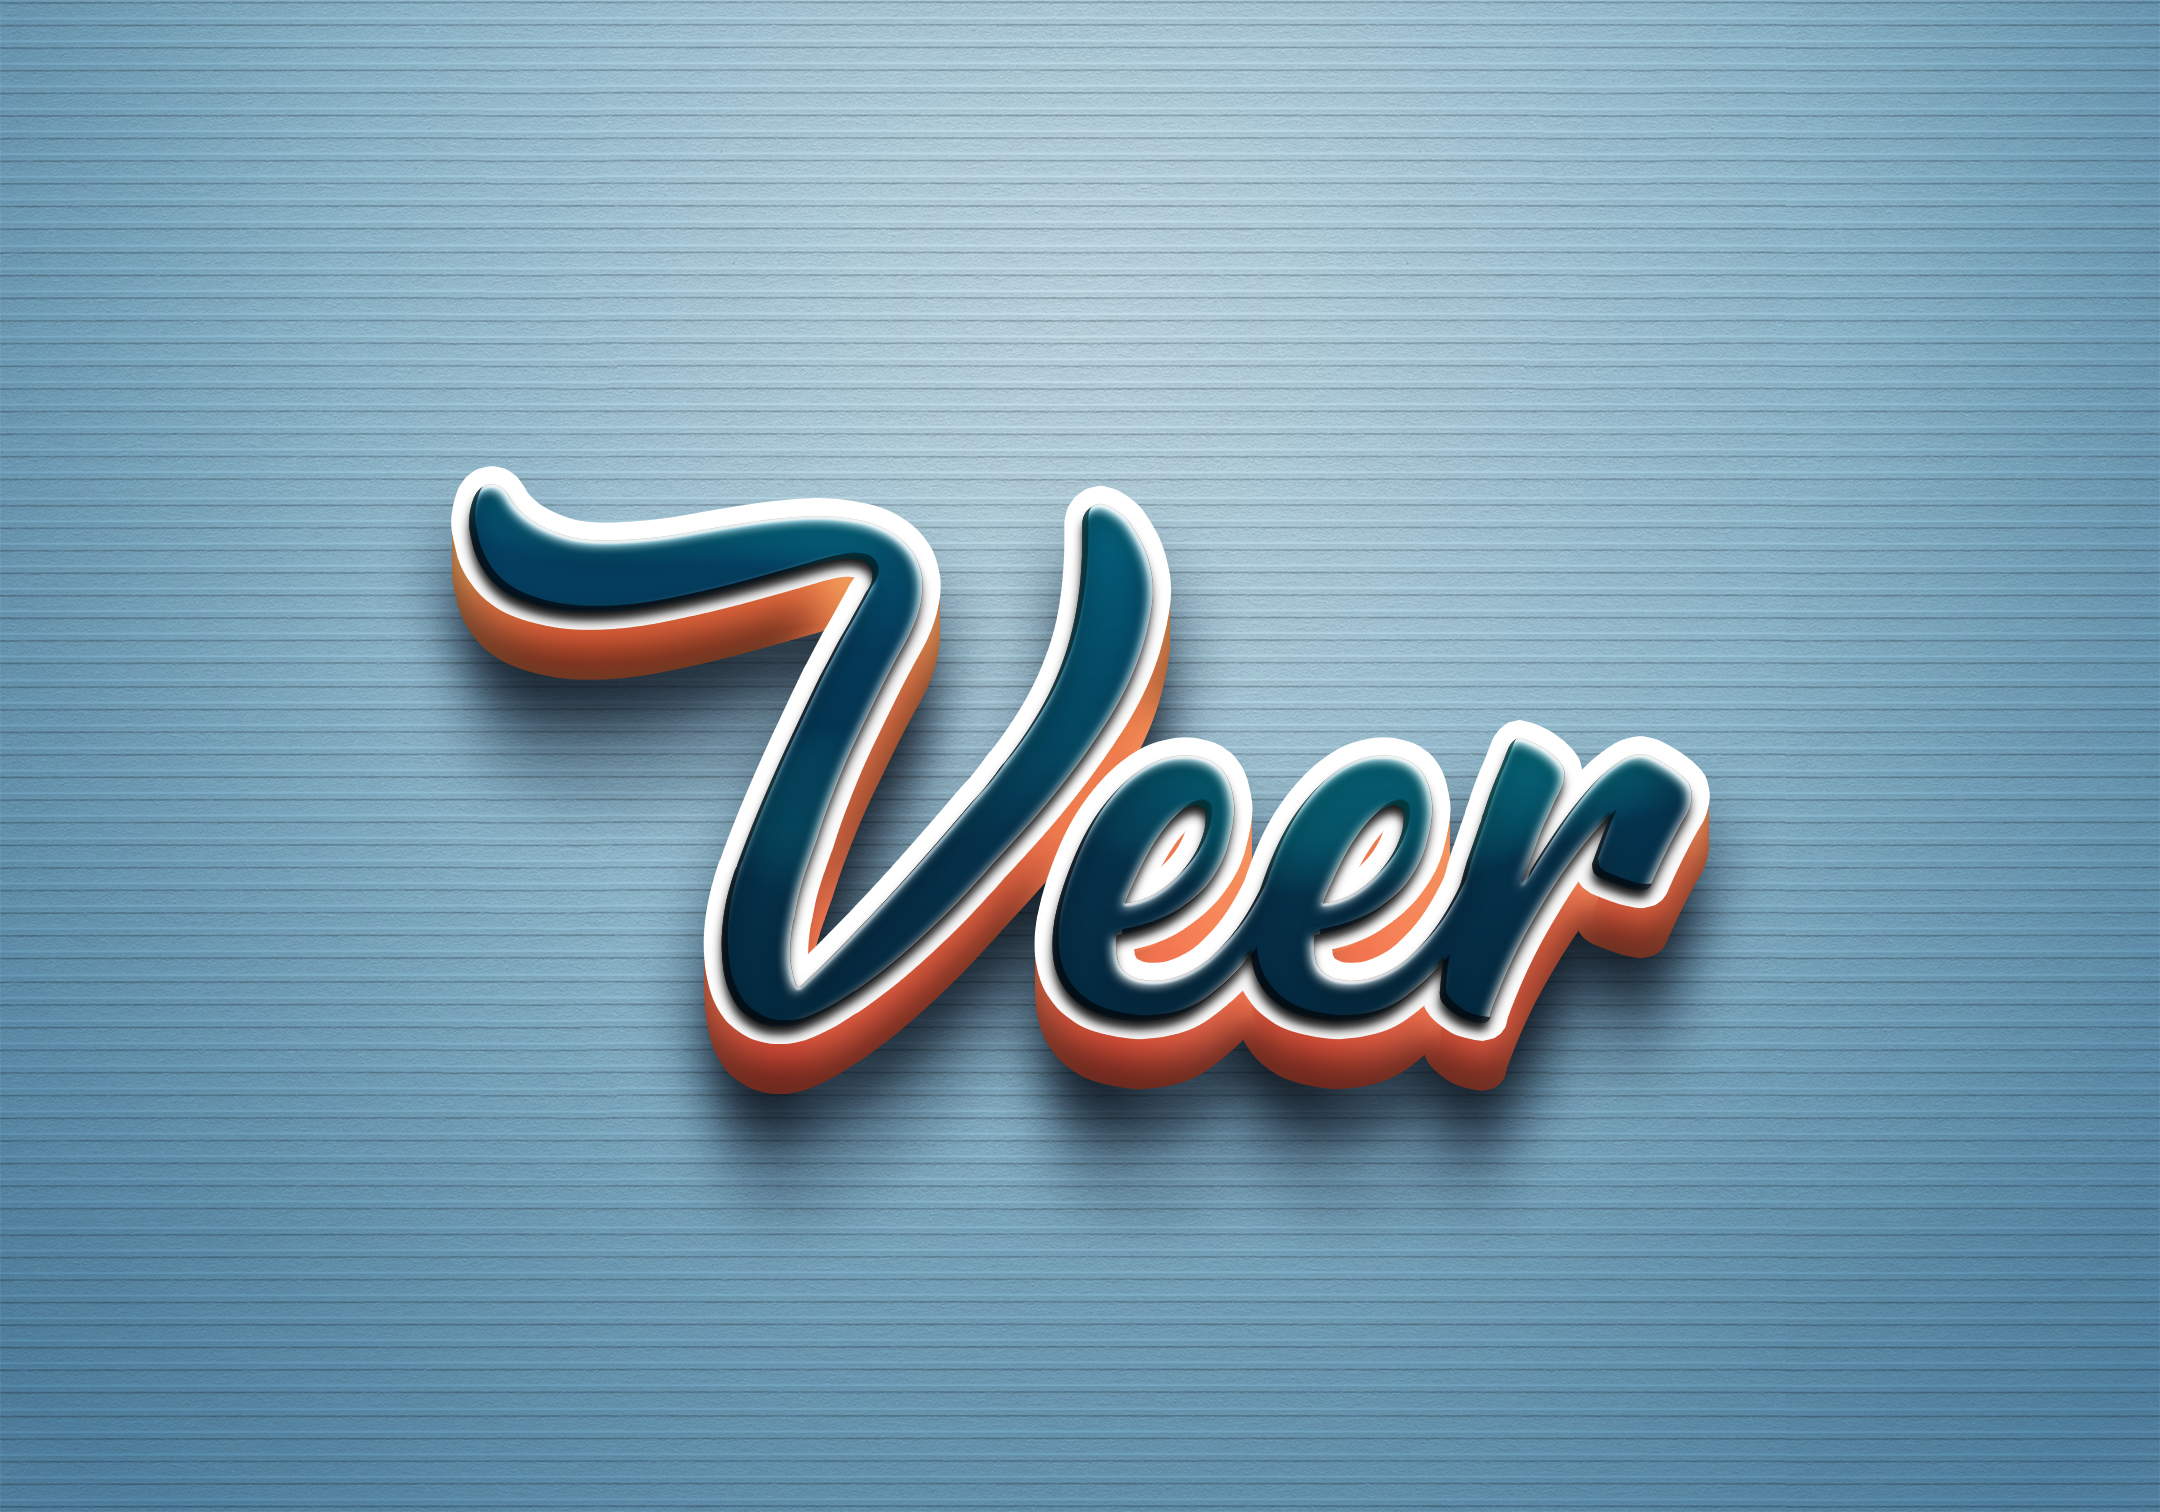 Veer Logo PNG Transparent Images Free Download | Vector Files | Pngtree